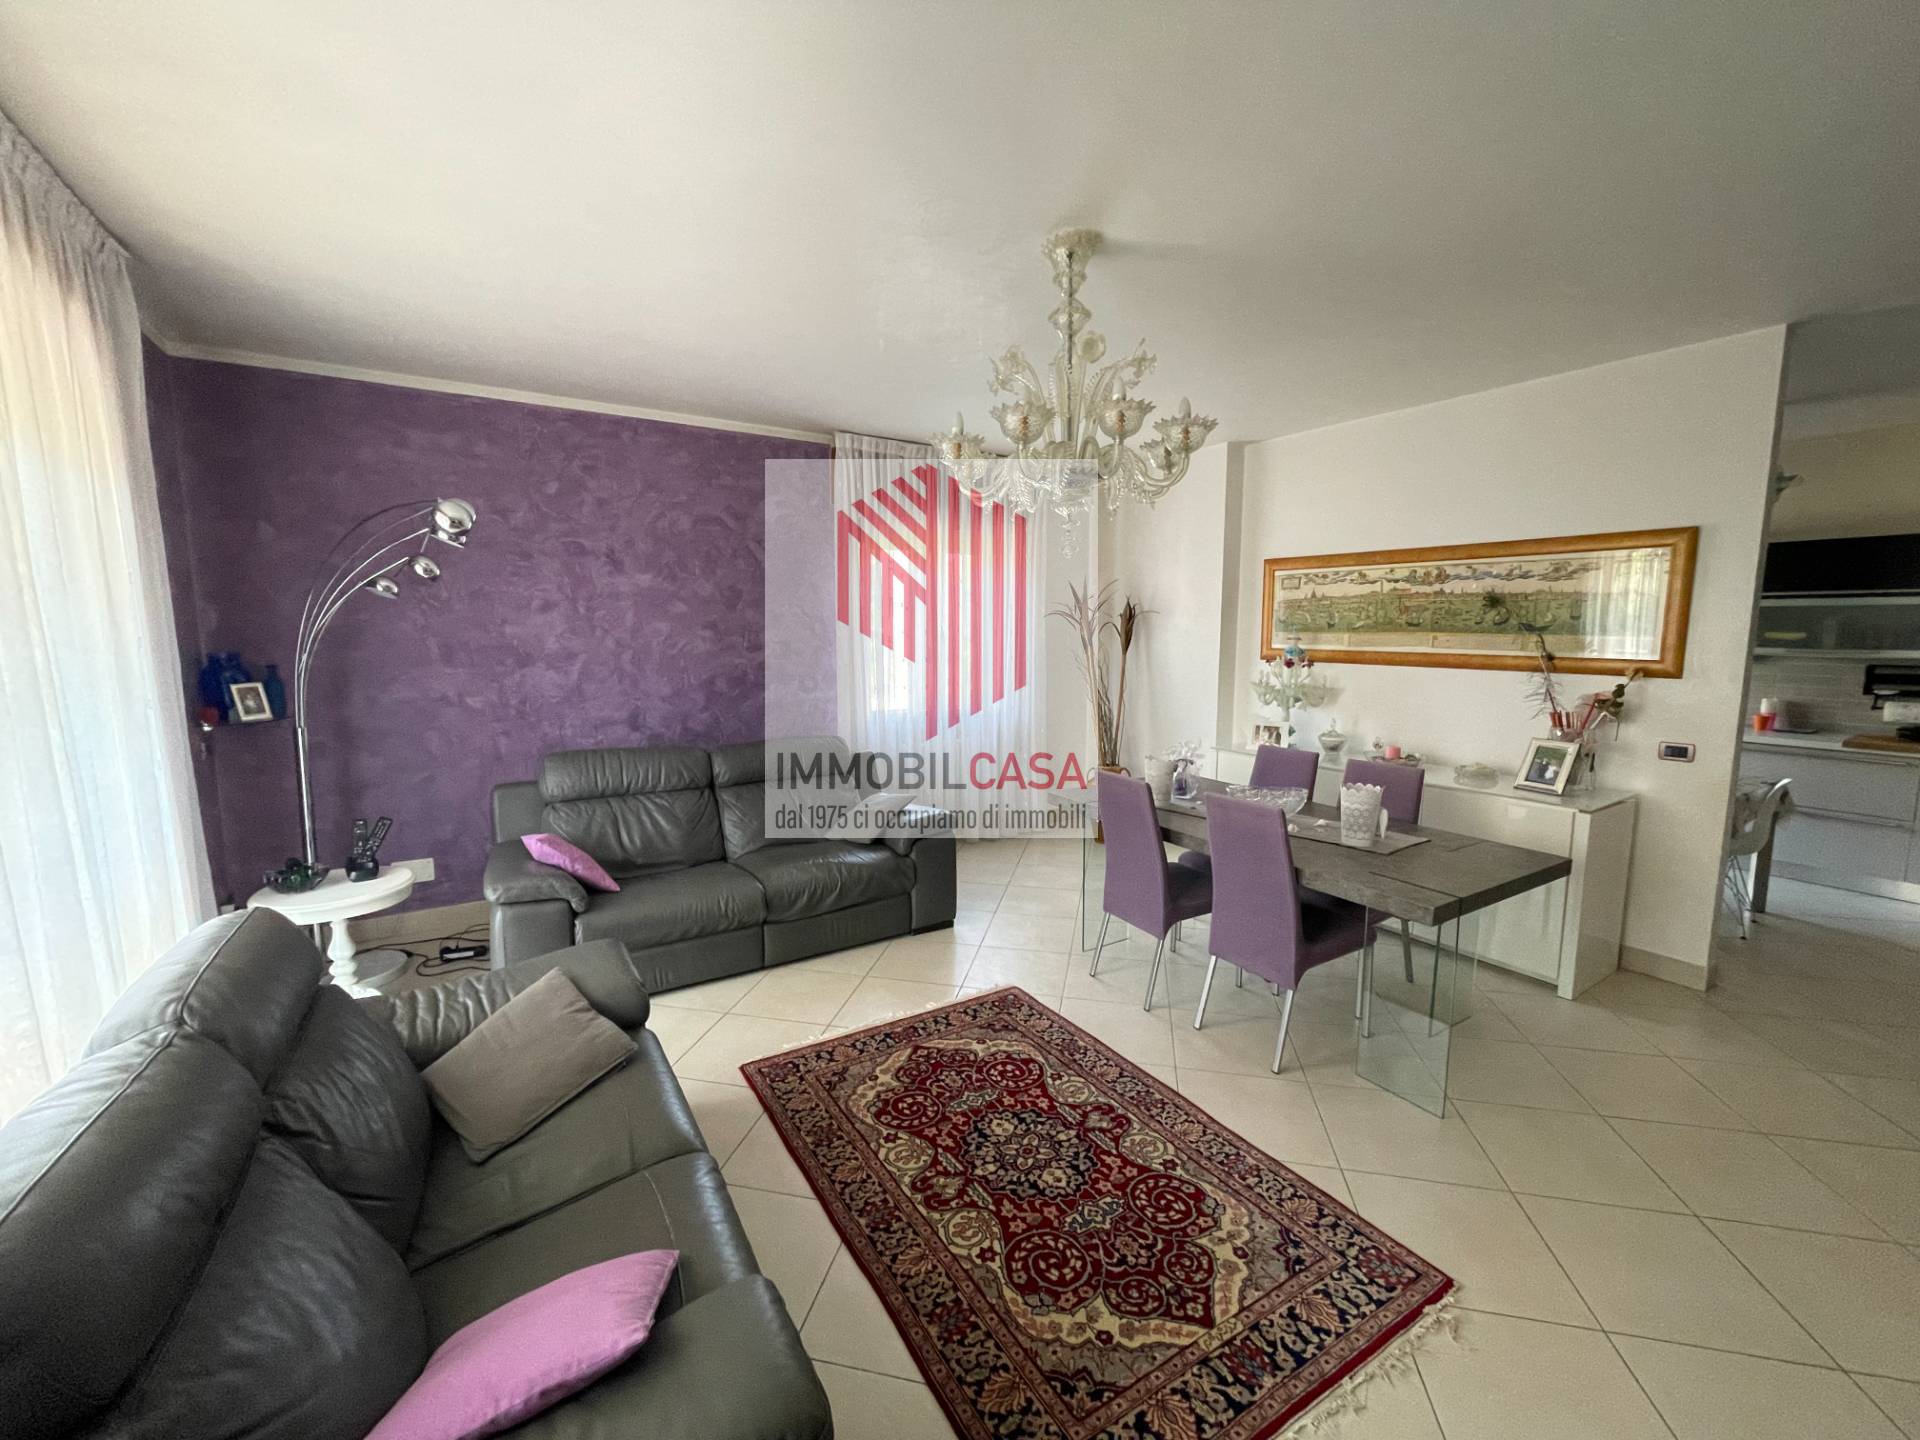 Appartamento in vendita a Casale sul Sile, 6 locali, prezzo € 195.000 | PortaleAgenzieImmobiliari.it